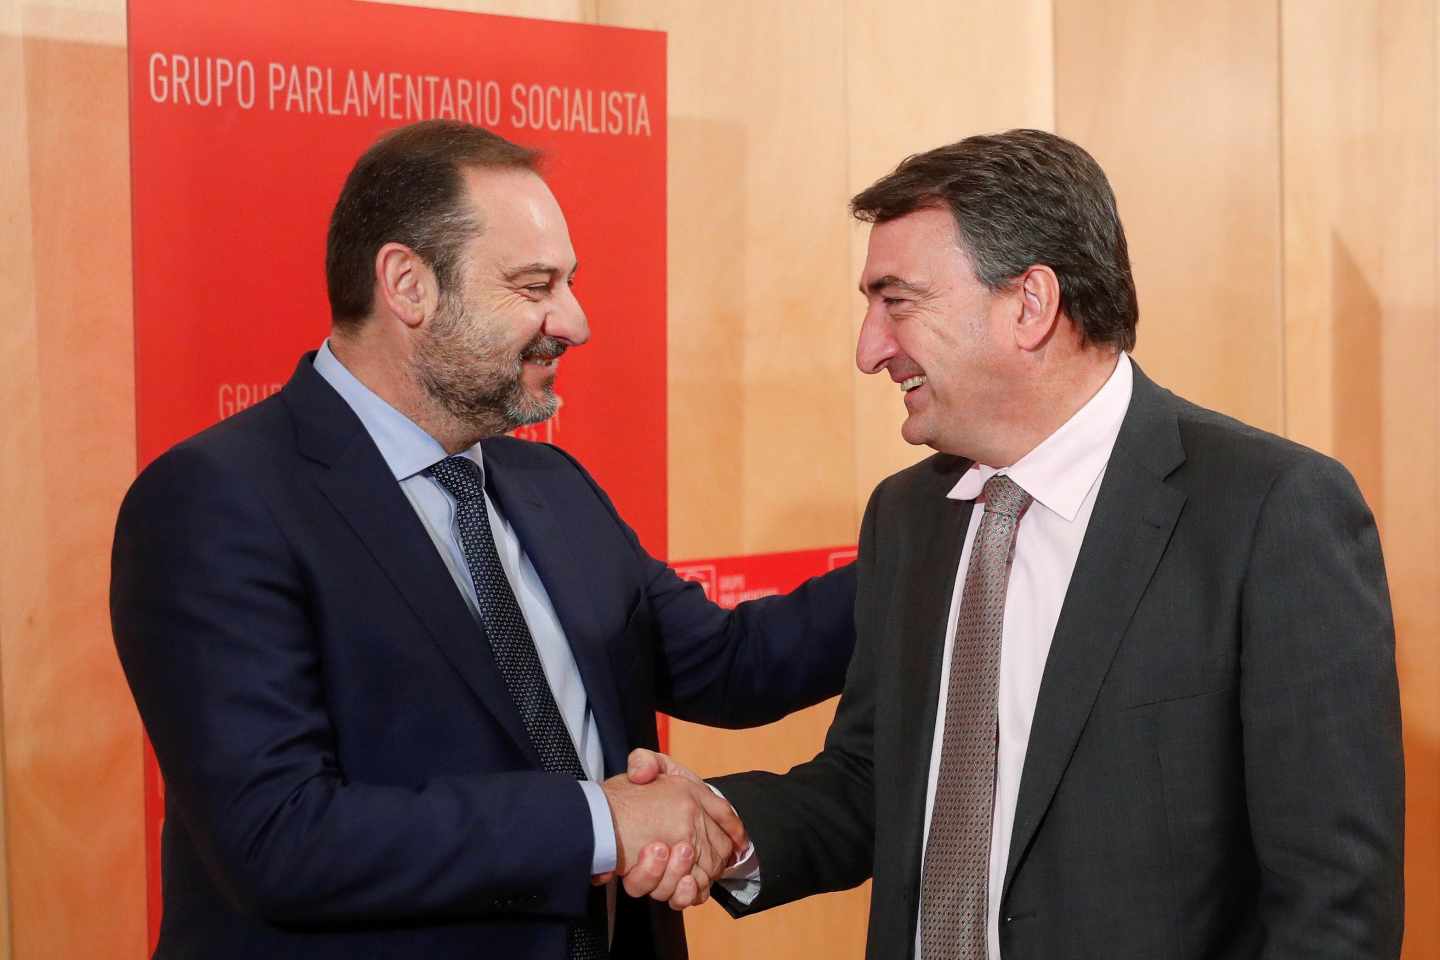 El PNV reclamará las transferencias pendientes y otro 'encaje territorial' en su cita con el PSOE